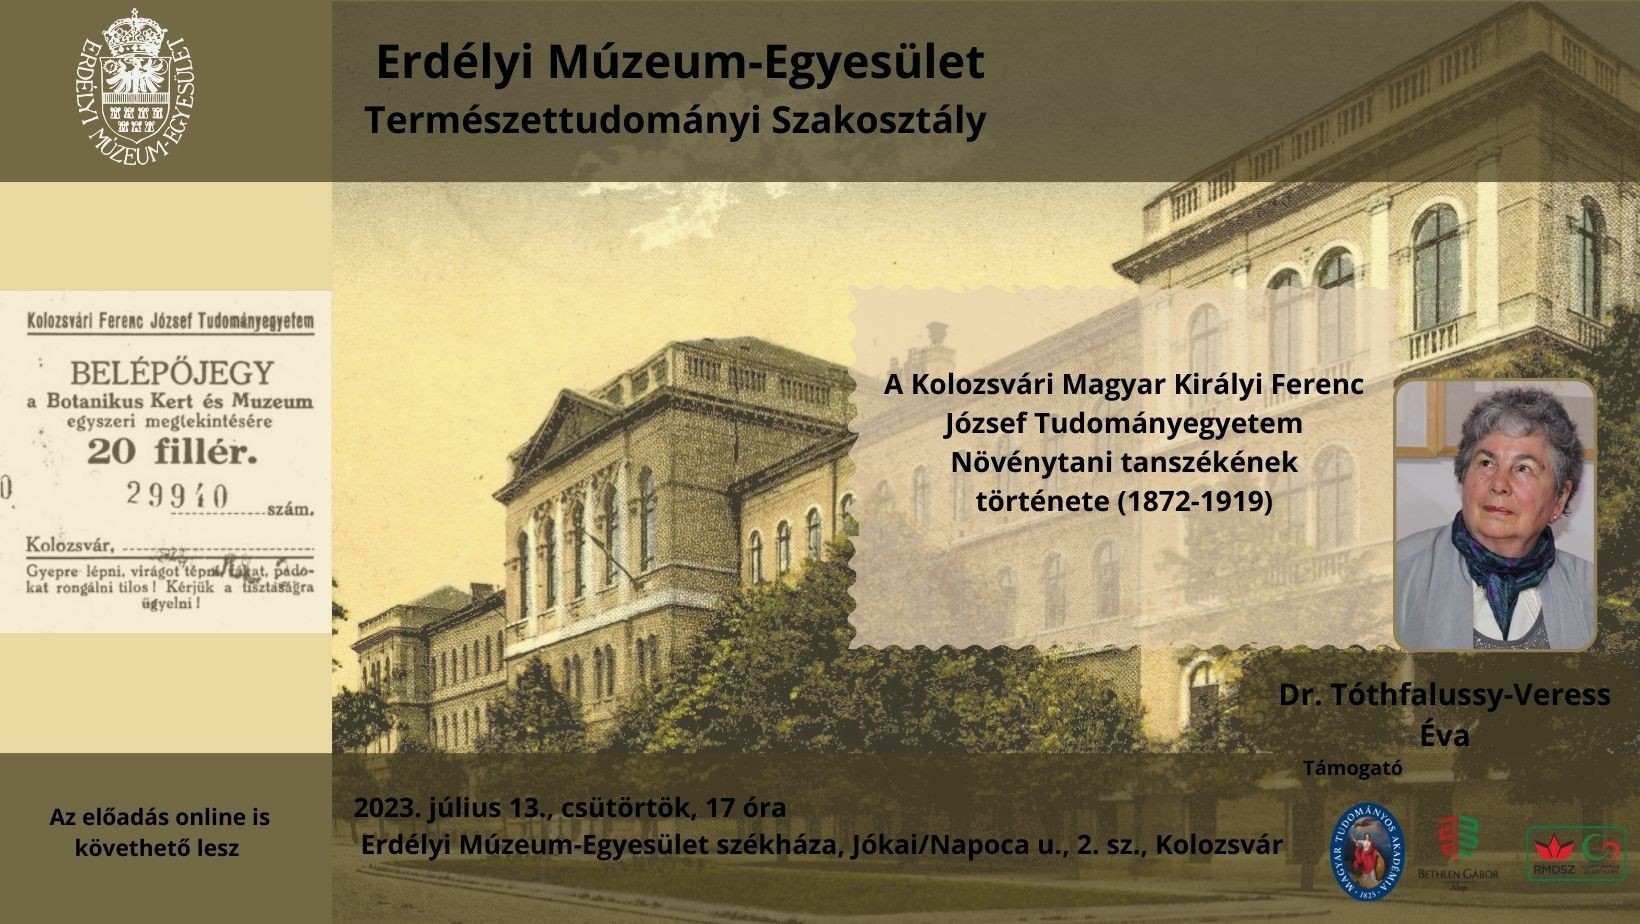 A botanika volt a kolozsvári magyar egyetem egyik erőssége